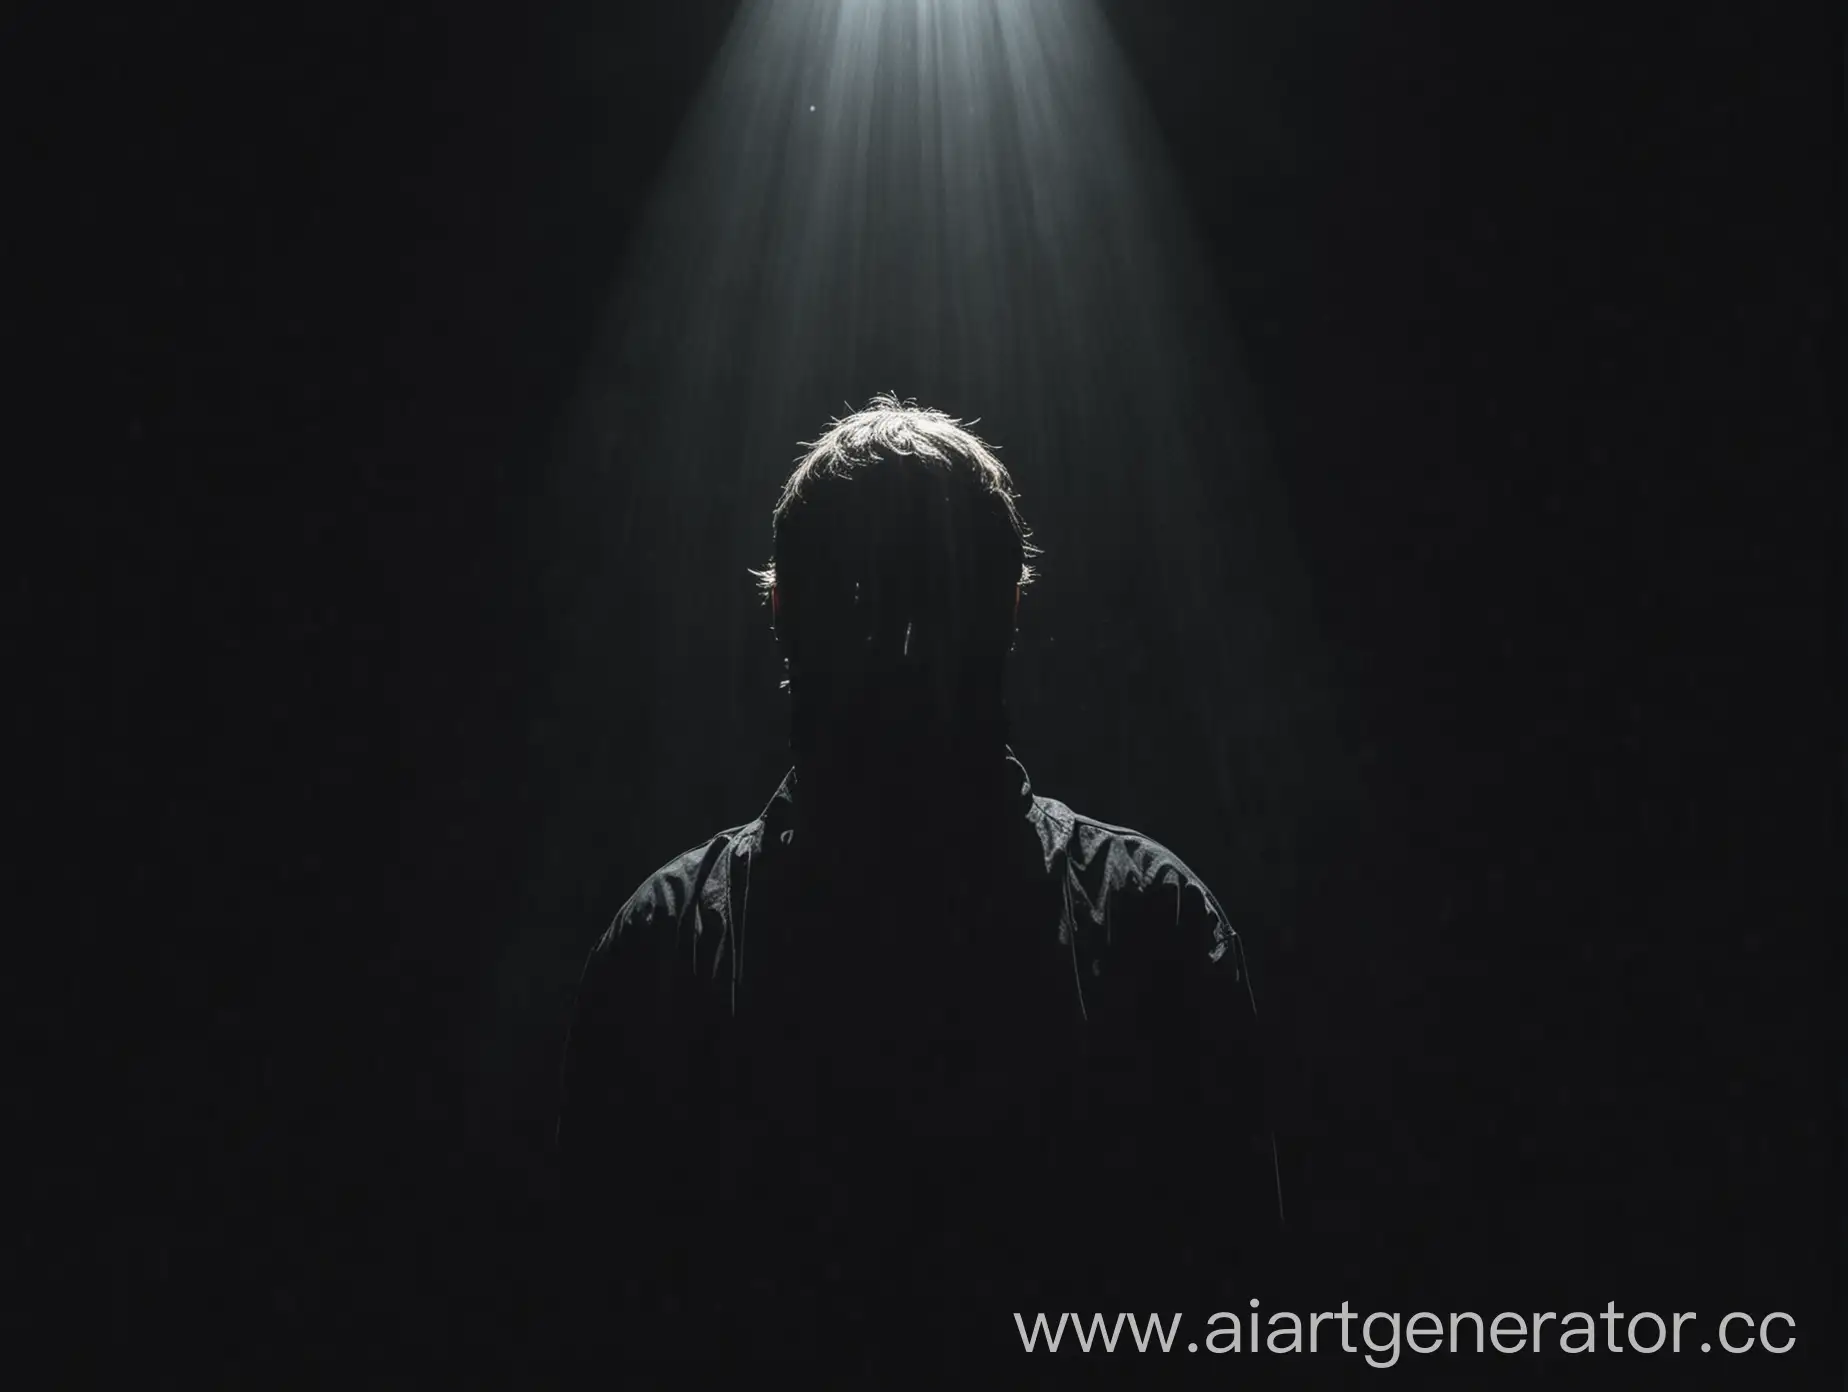 Человек без лица в черной комнате под источником света